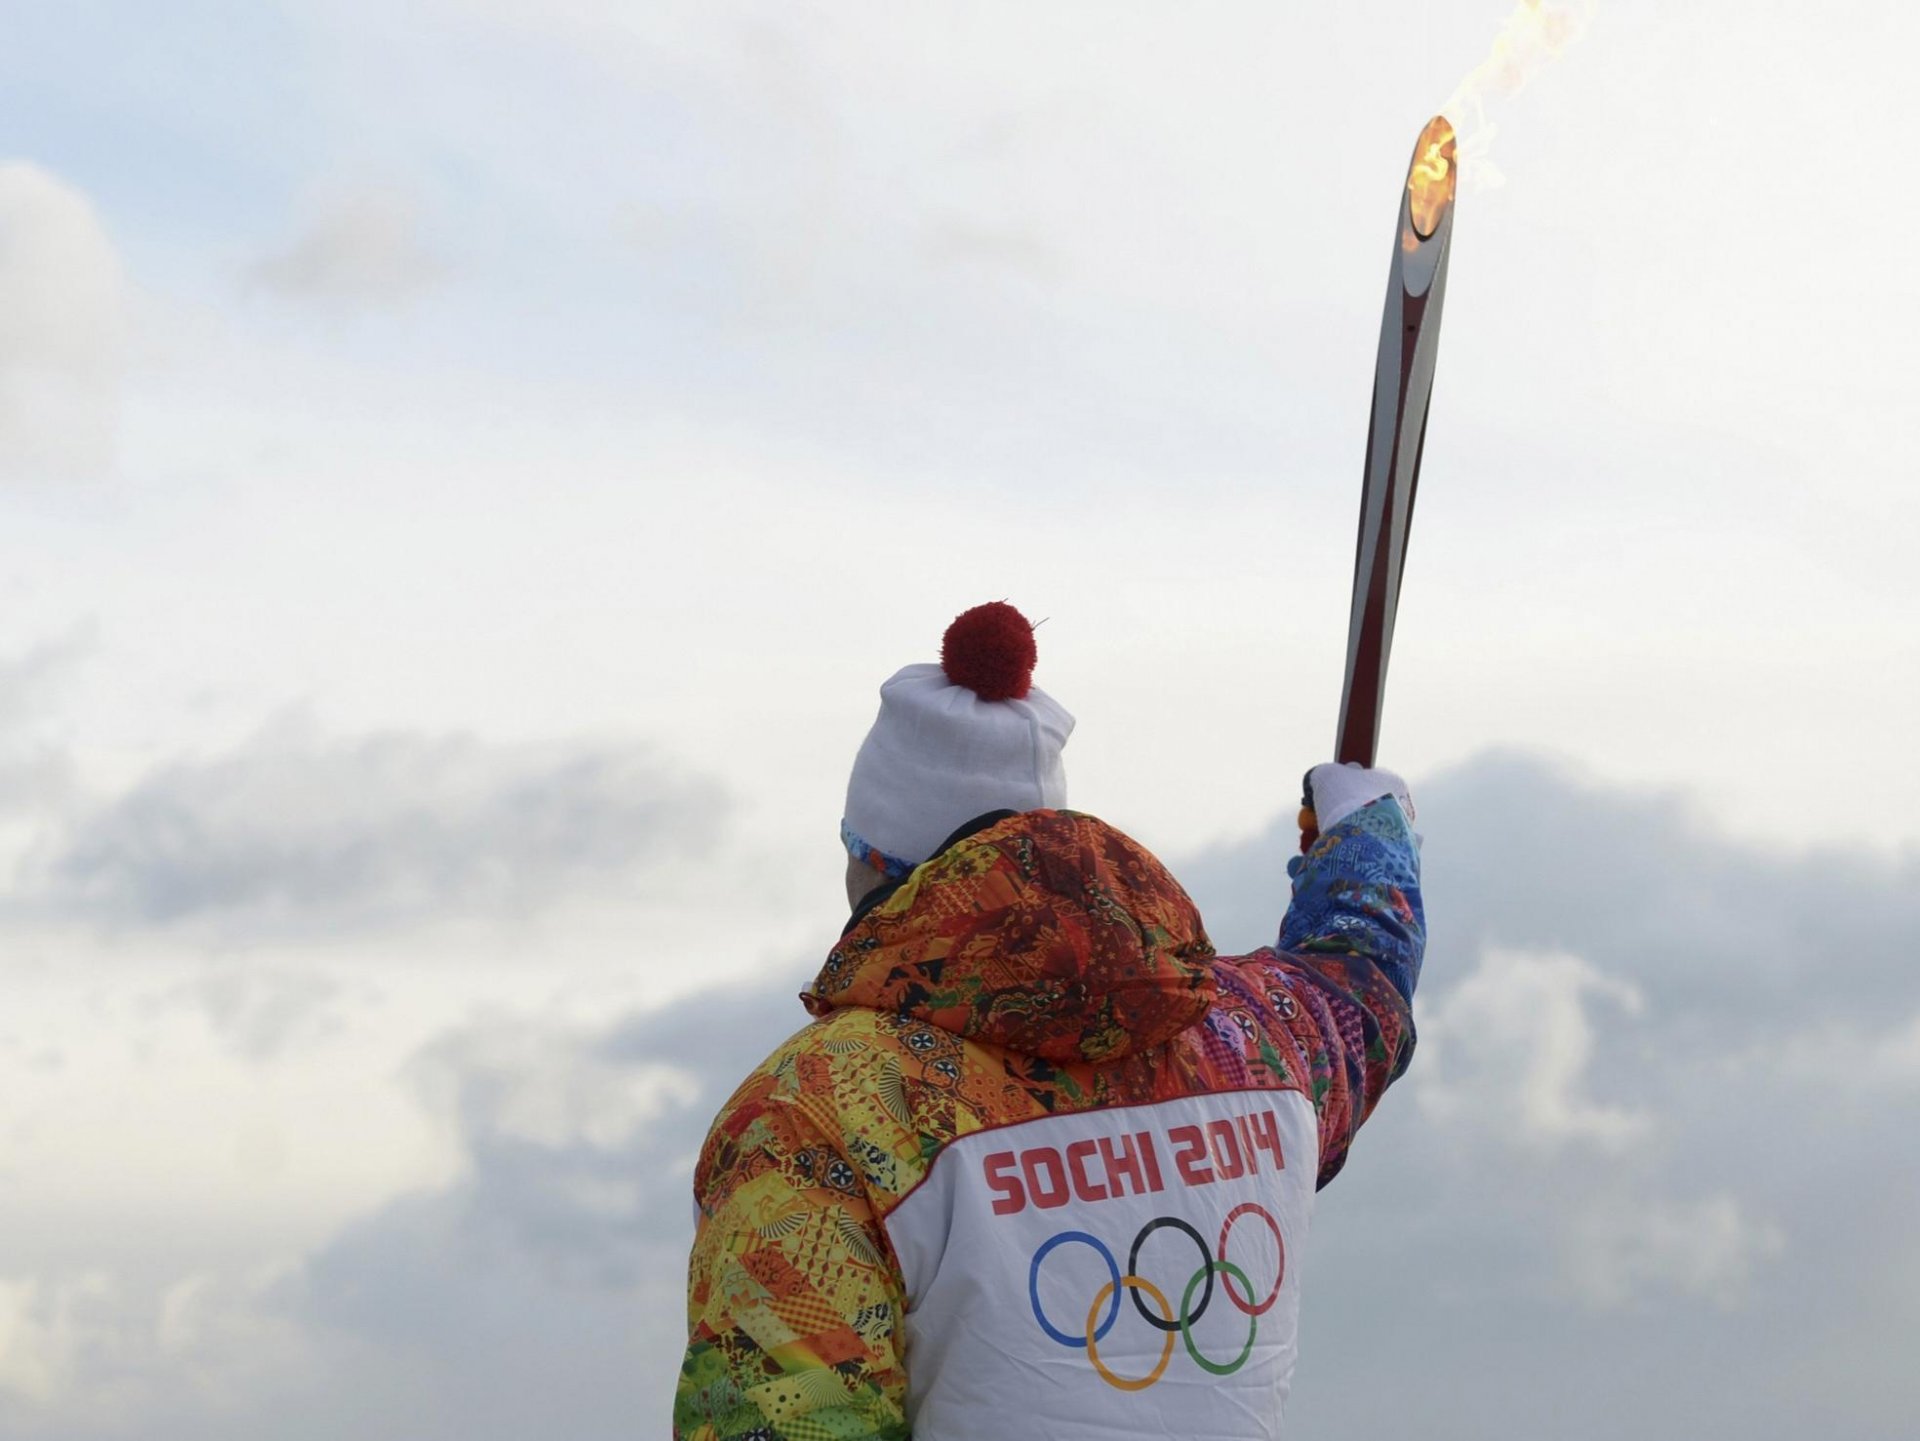 факел спортсмен факелоносец сочи 2014 олимпиада сочи-2014 зимние олимпийские игры